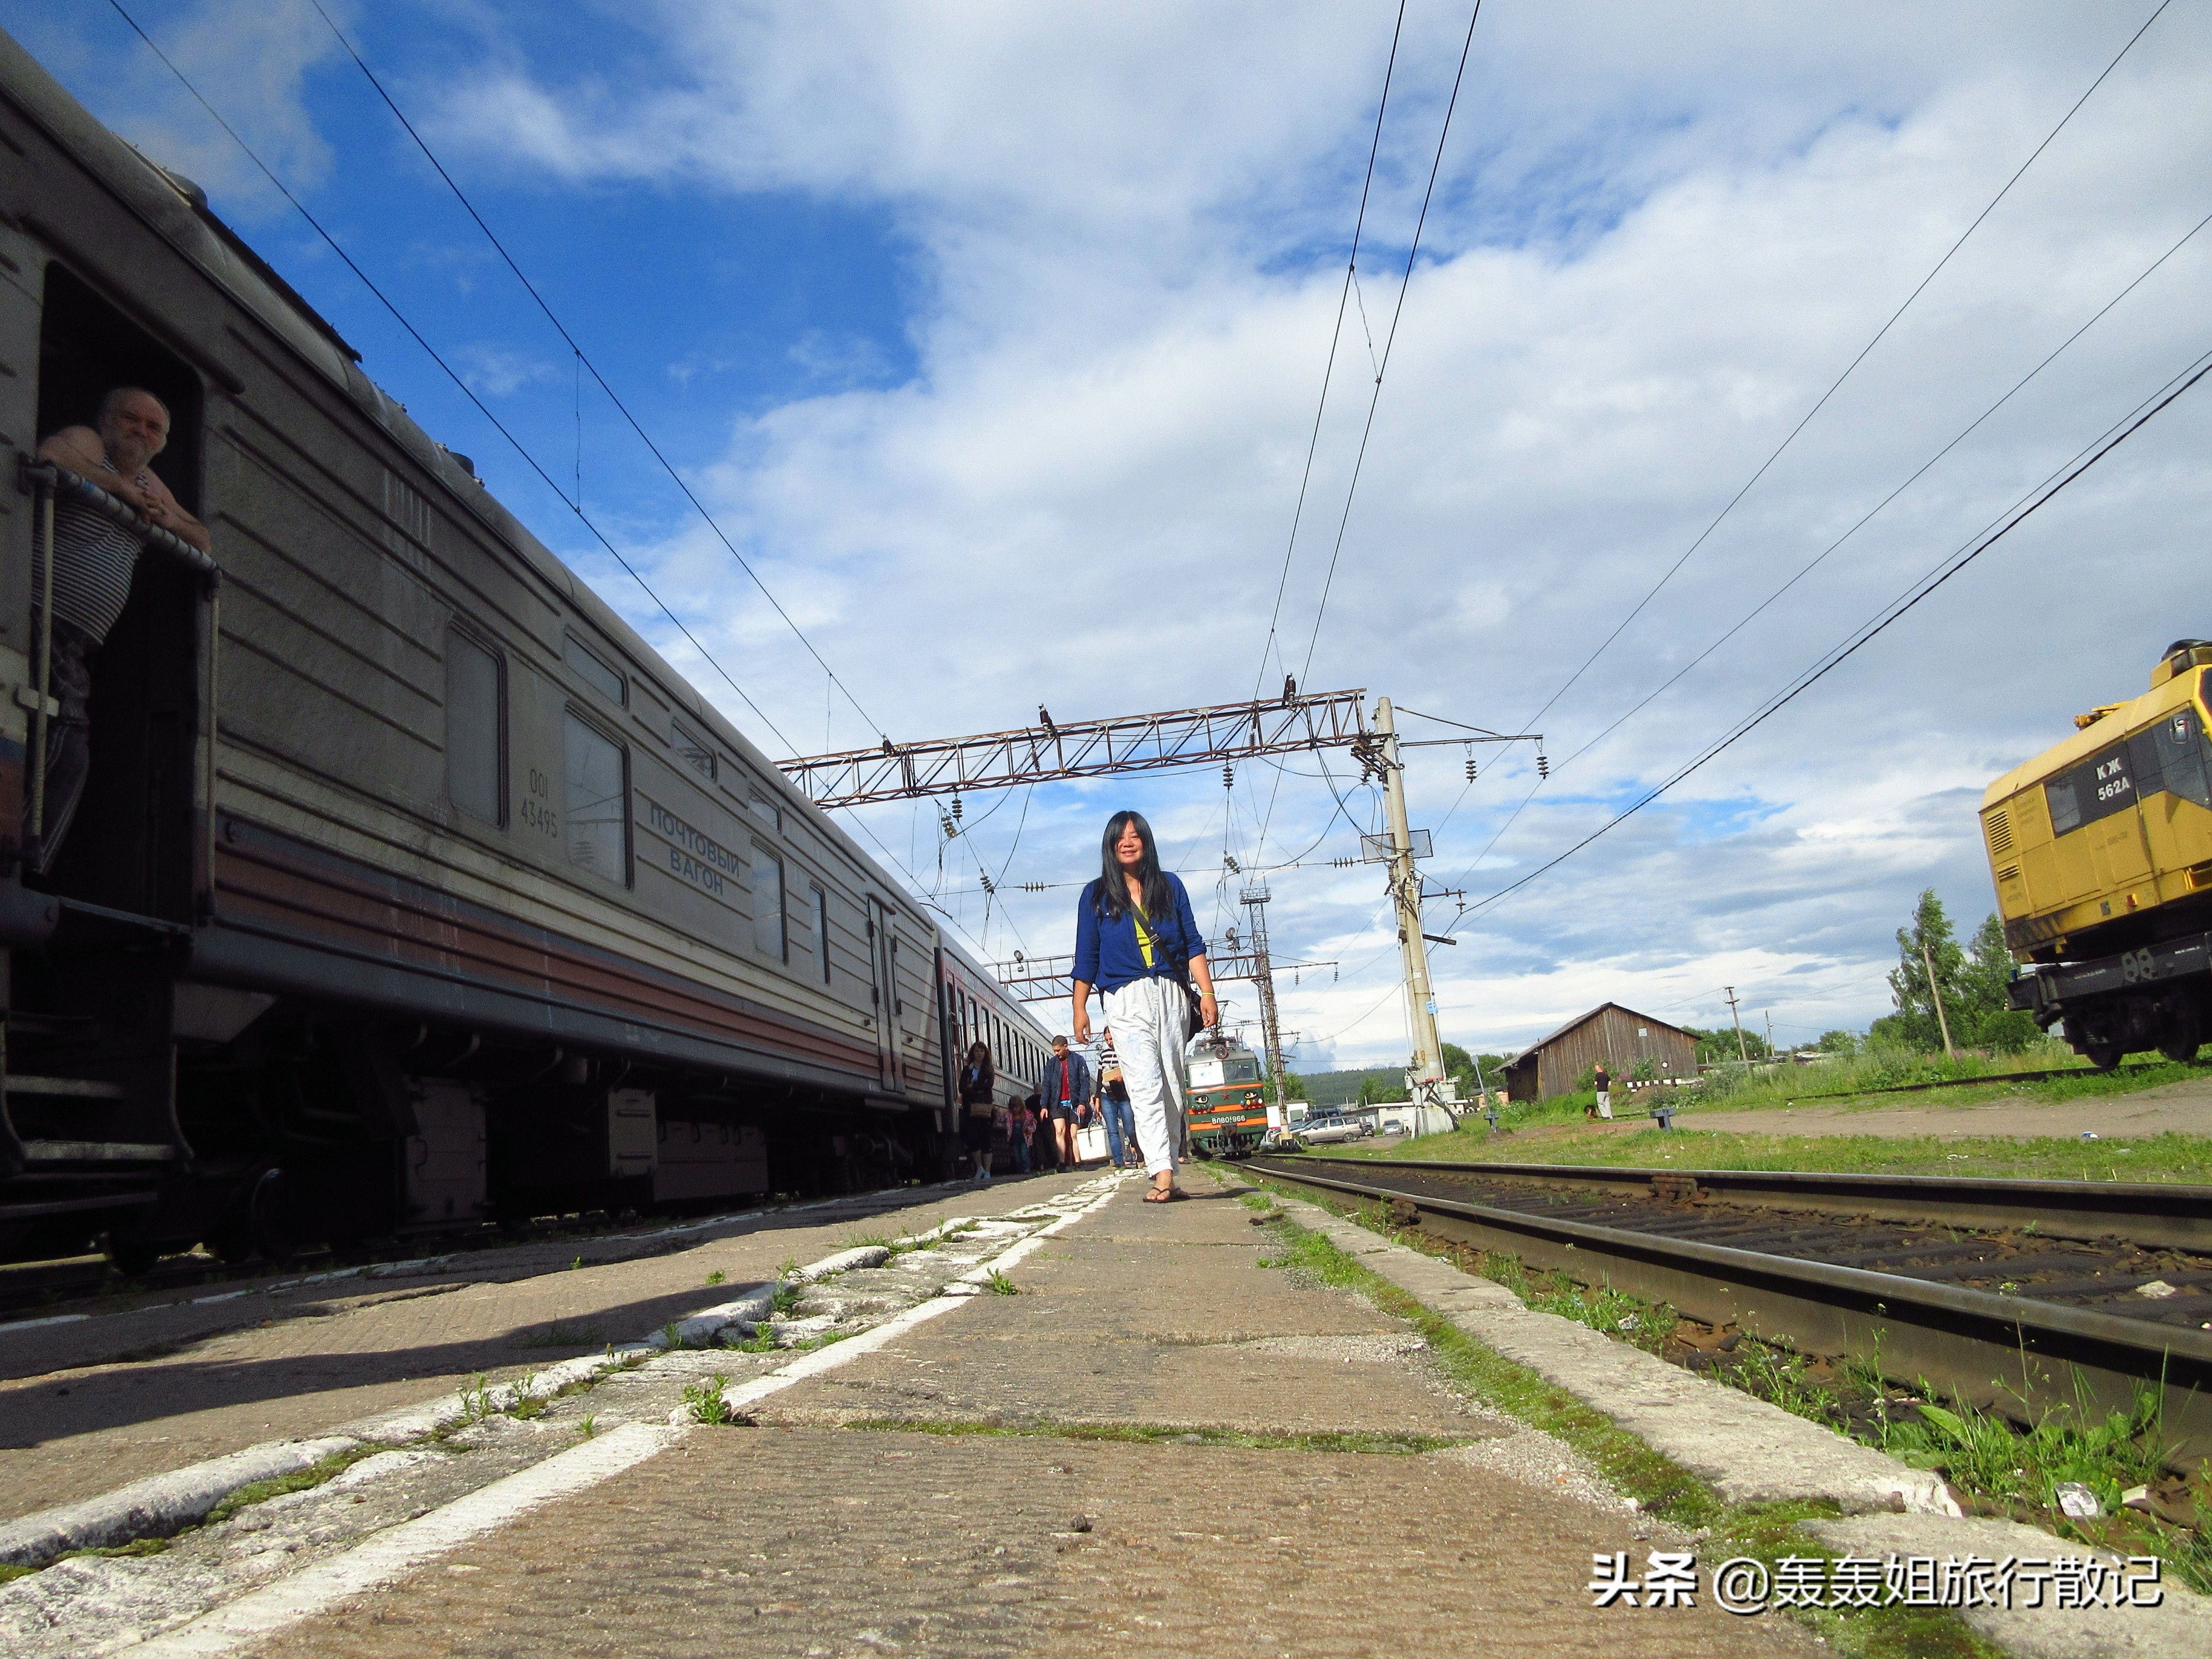 国际列车k19北京-莫斯科 全程票价vs分段票价，到底贵多少？